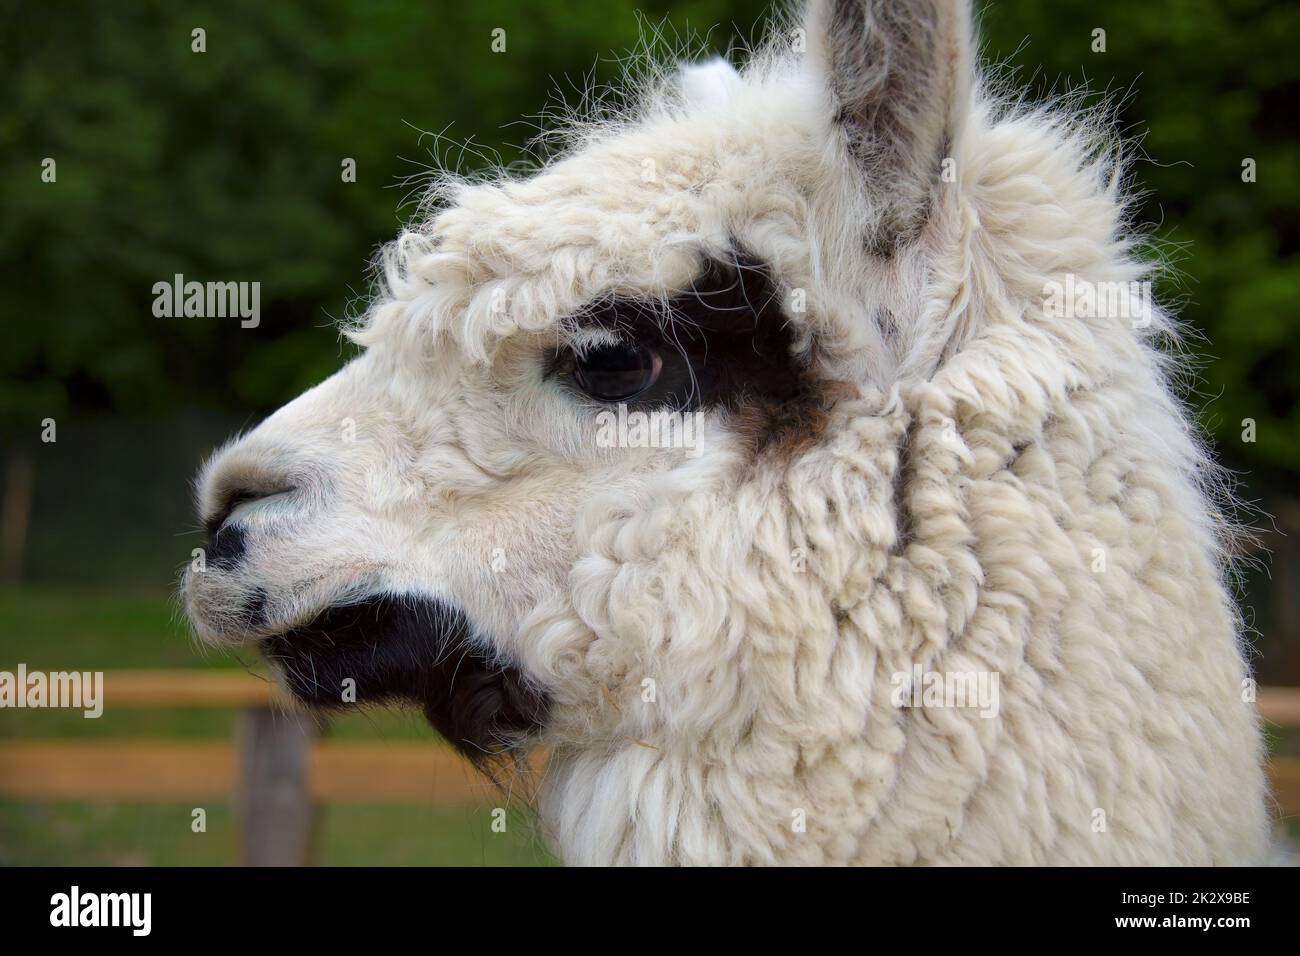 alpaca cabeza perfil ver lana blanca lama retrato animal granja llama ganado Foto de stock